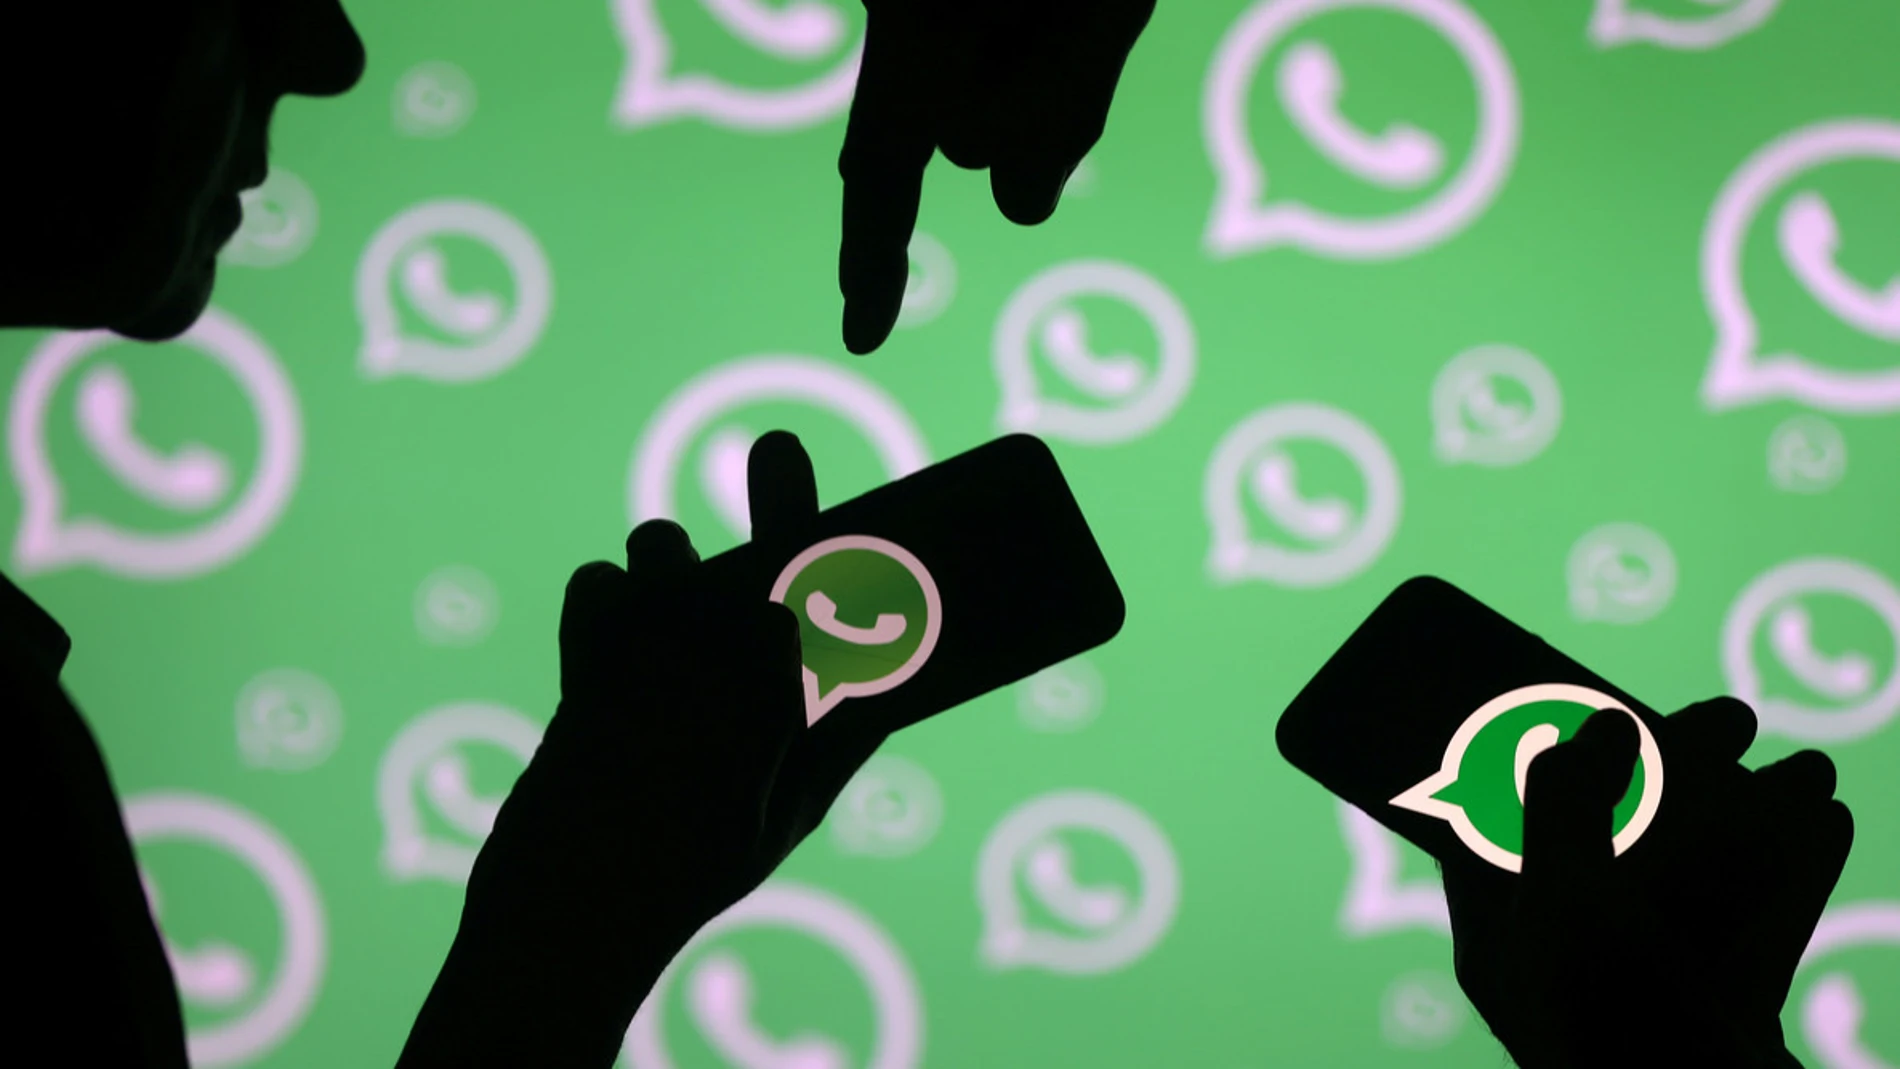 La nueva función de WhatsApp se irá adoptando progresivamente según países / Reuters